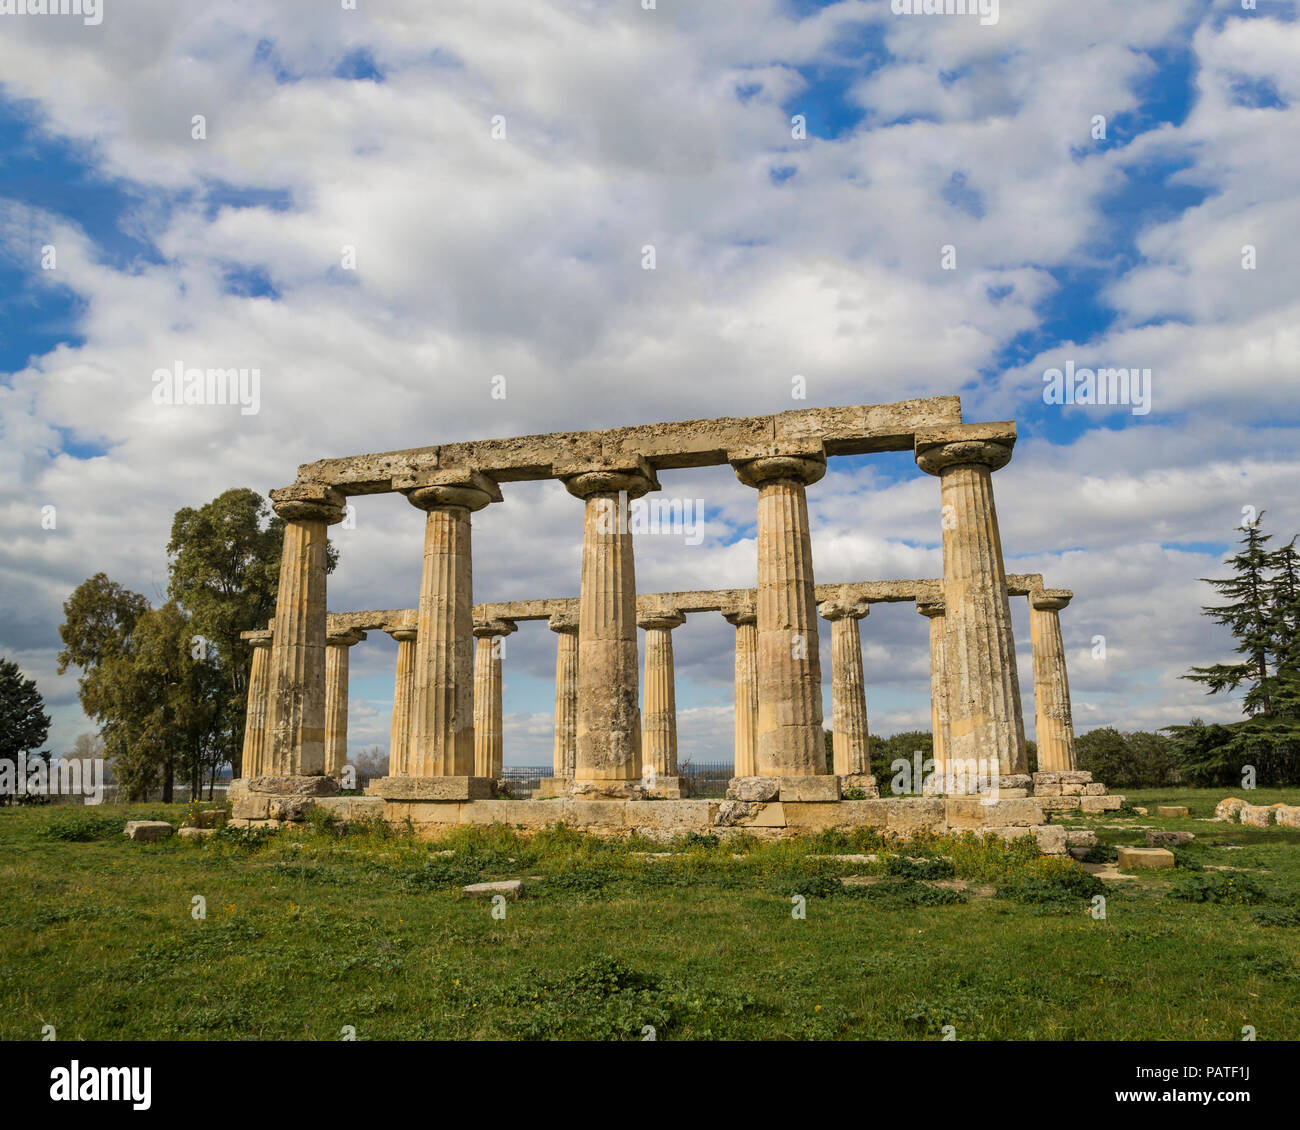 Le rovine romane del tempio greco colonne tavole palatine basilicata matera 2019 capitale europea della cultura 2019 policoro metaponto Foto Stock